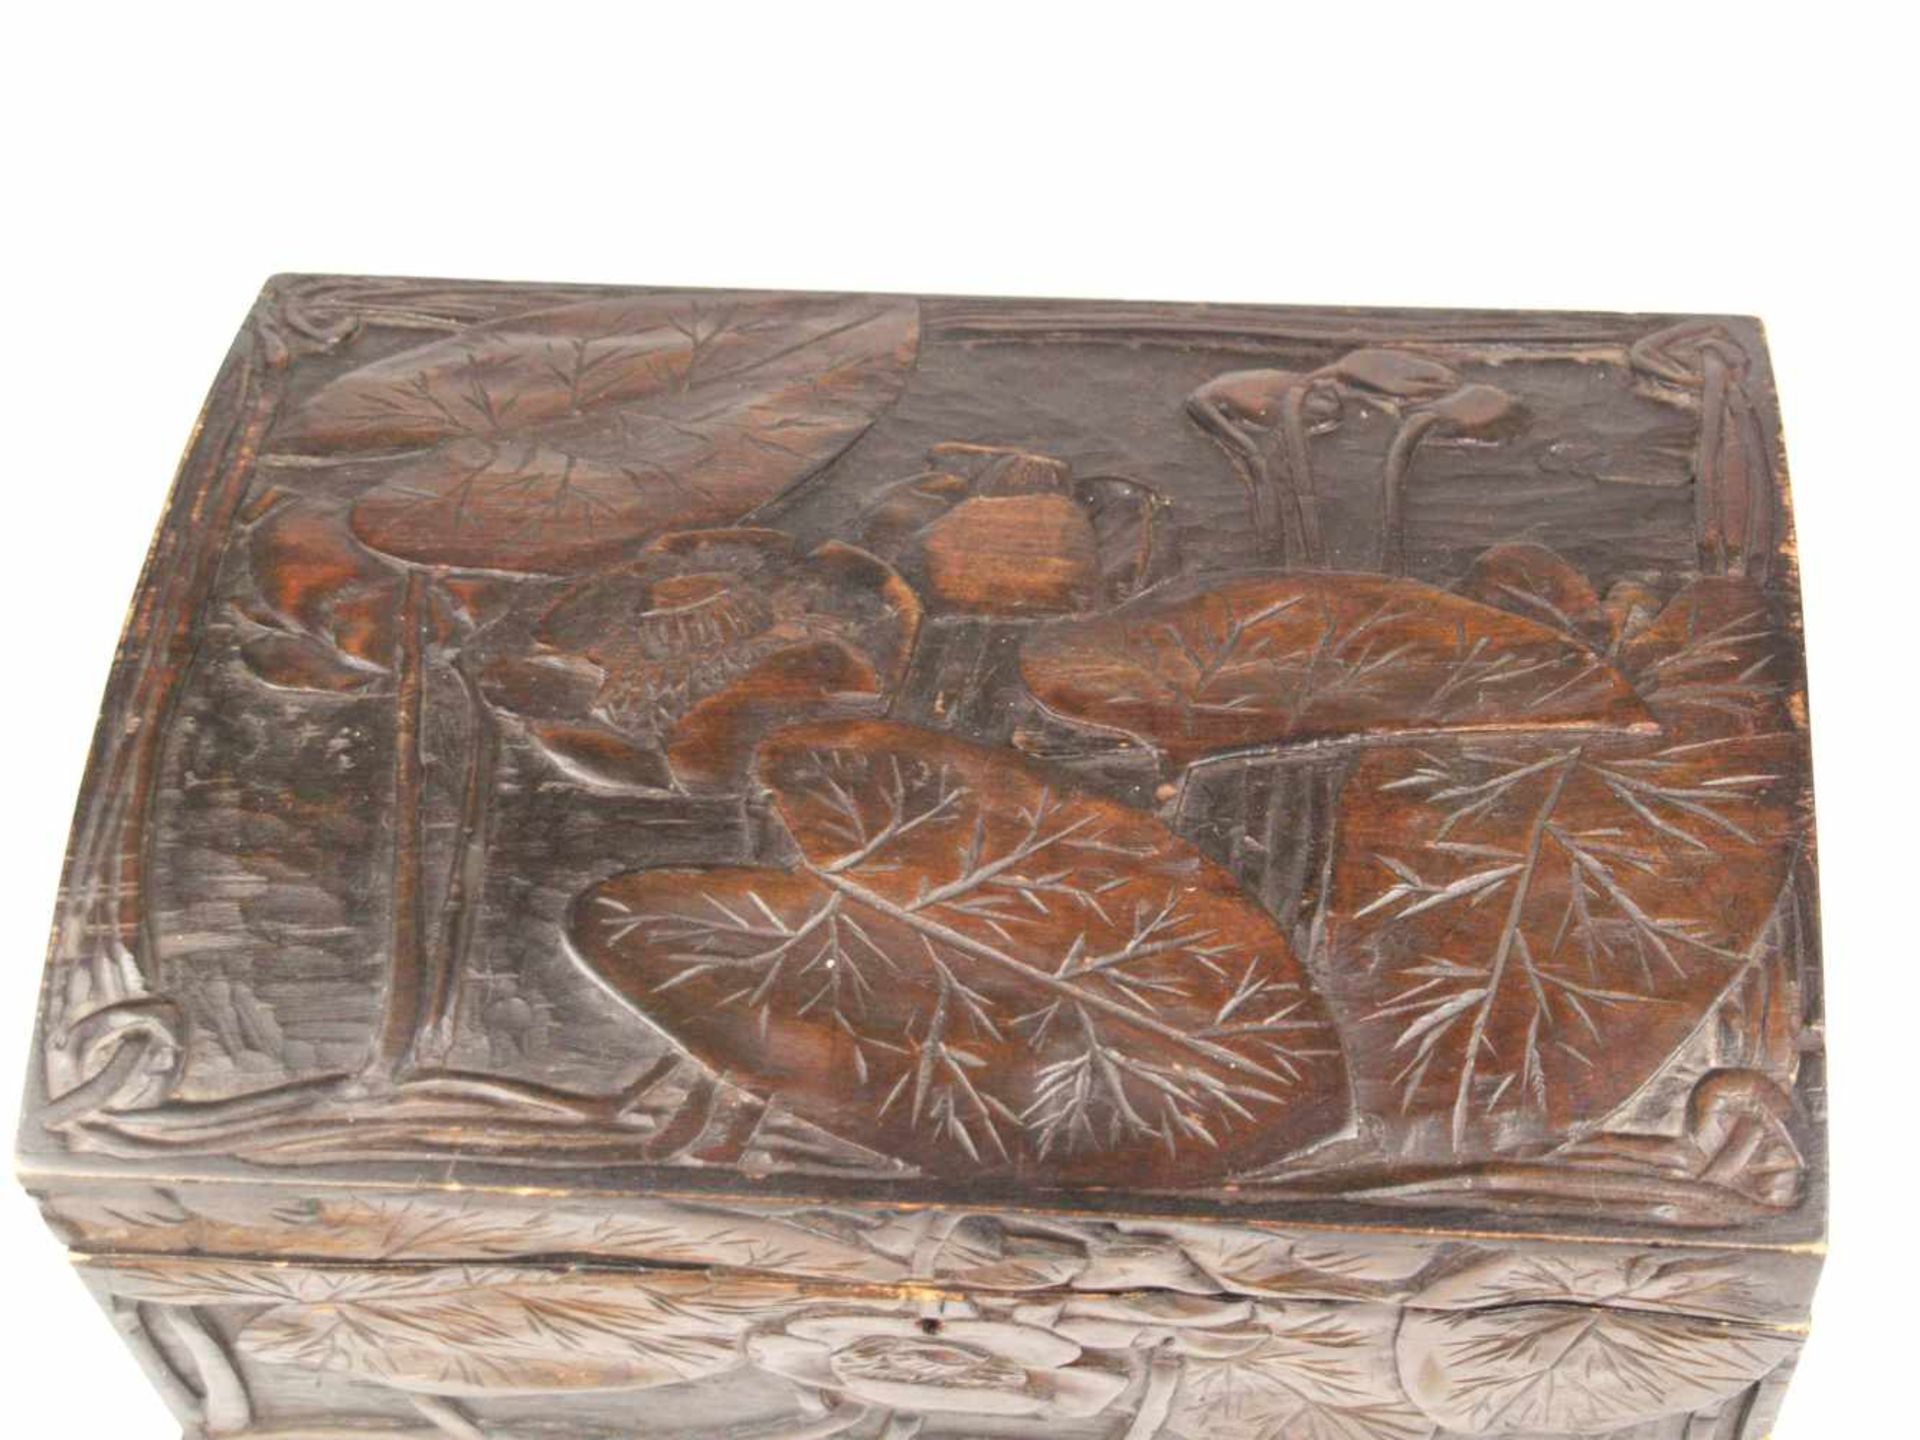 Holzkasten - rechteckiger Korpus, außen braun bemalt, geschnitzter Lotosblumen Dekor, - Bild 2 aus 10